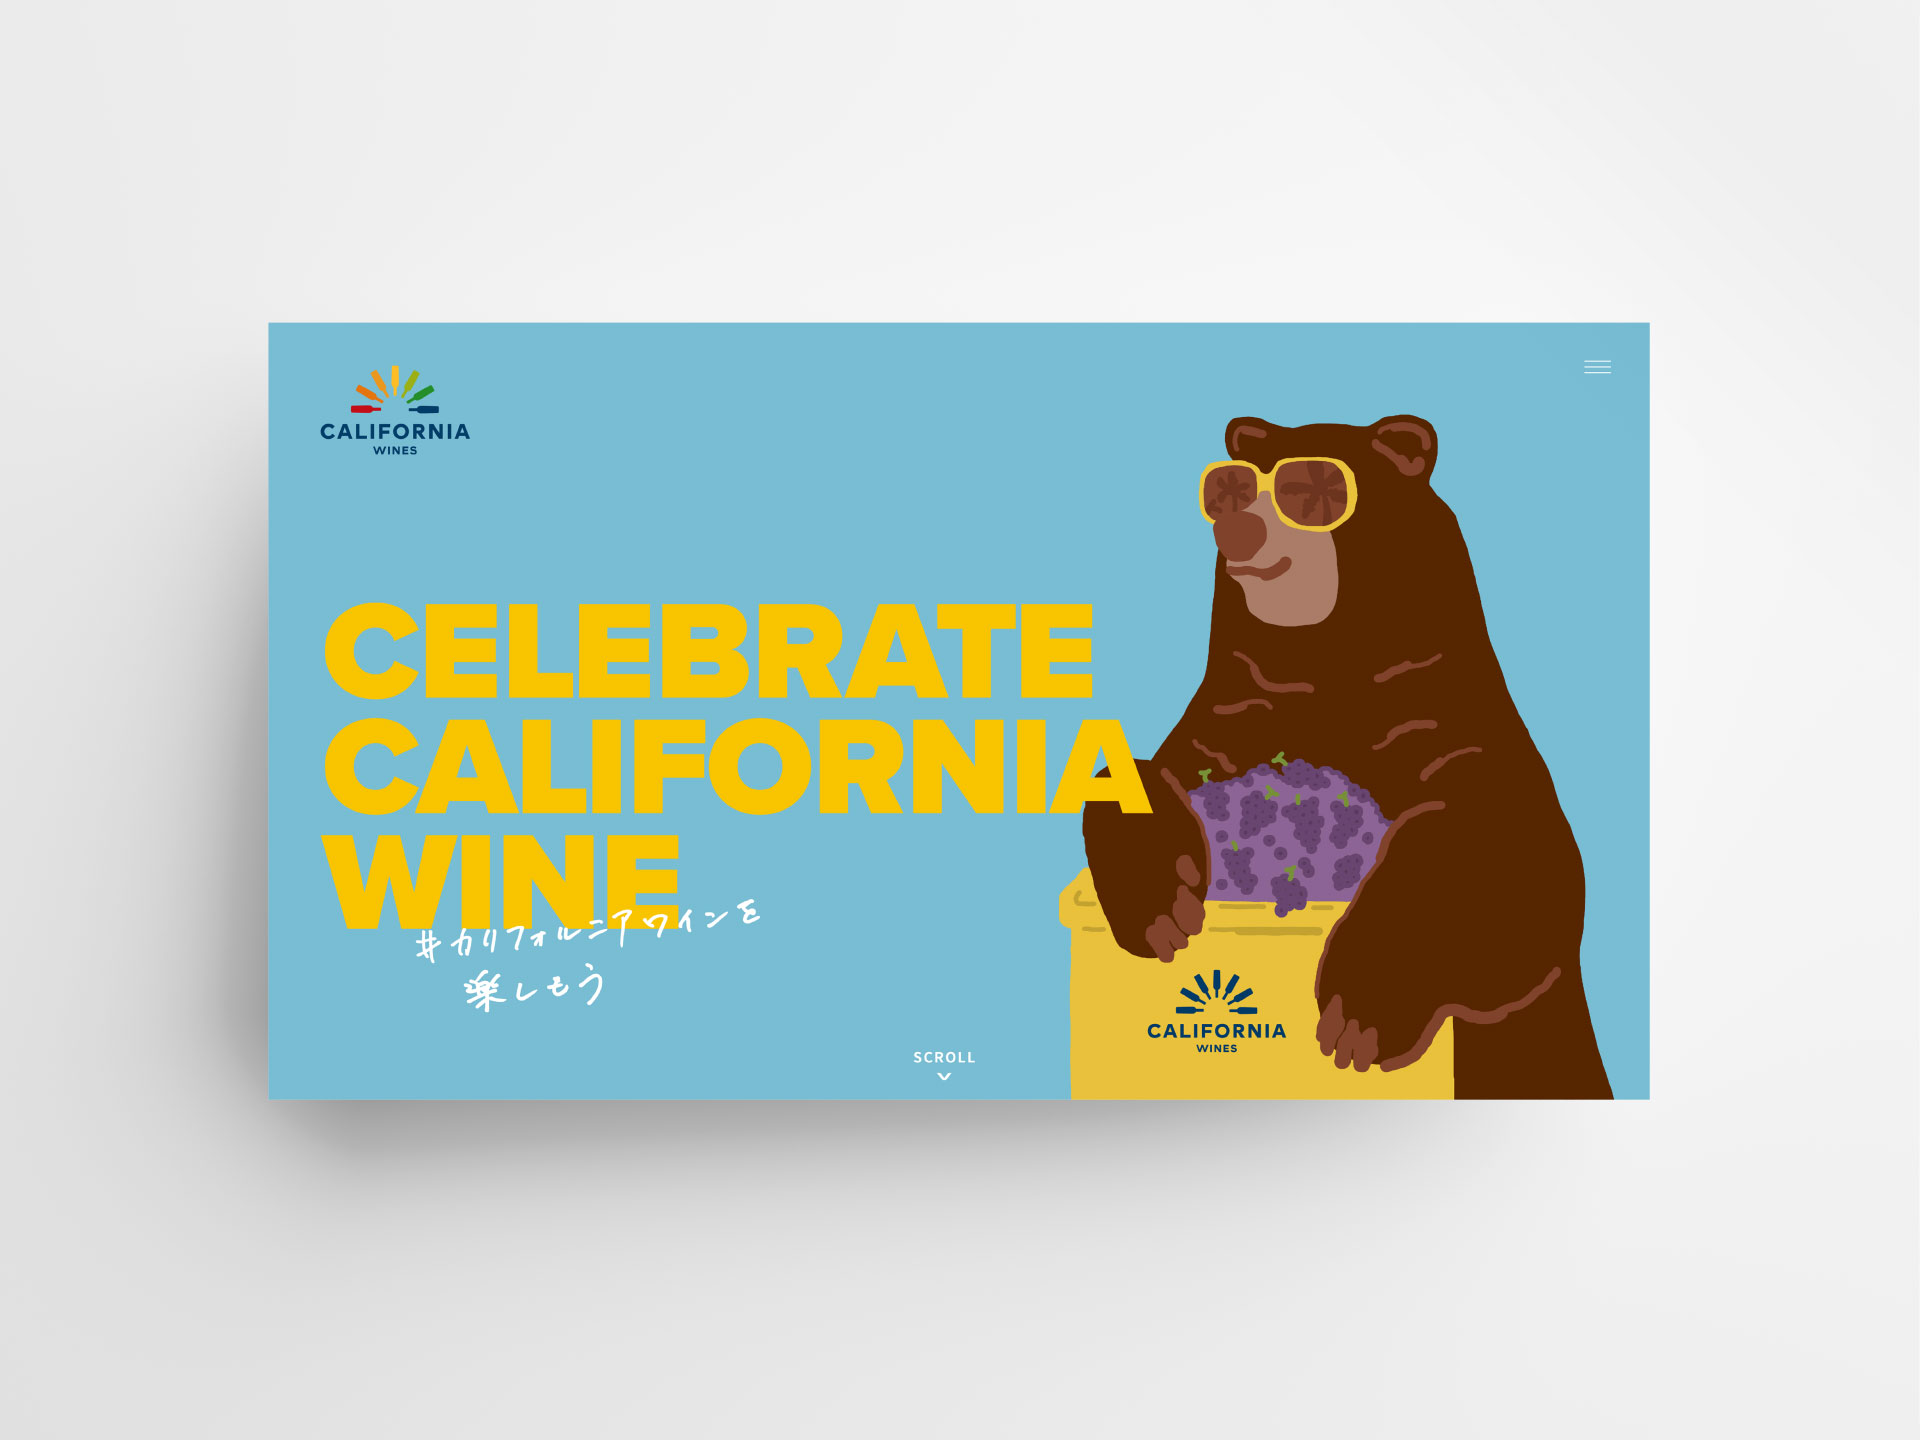 CALIFORNIA WINES